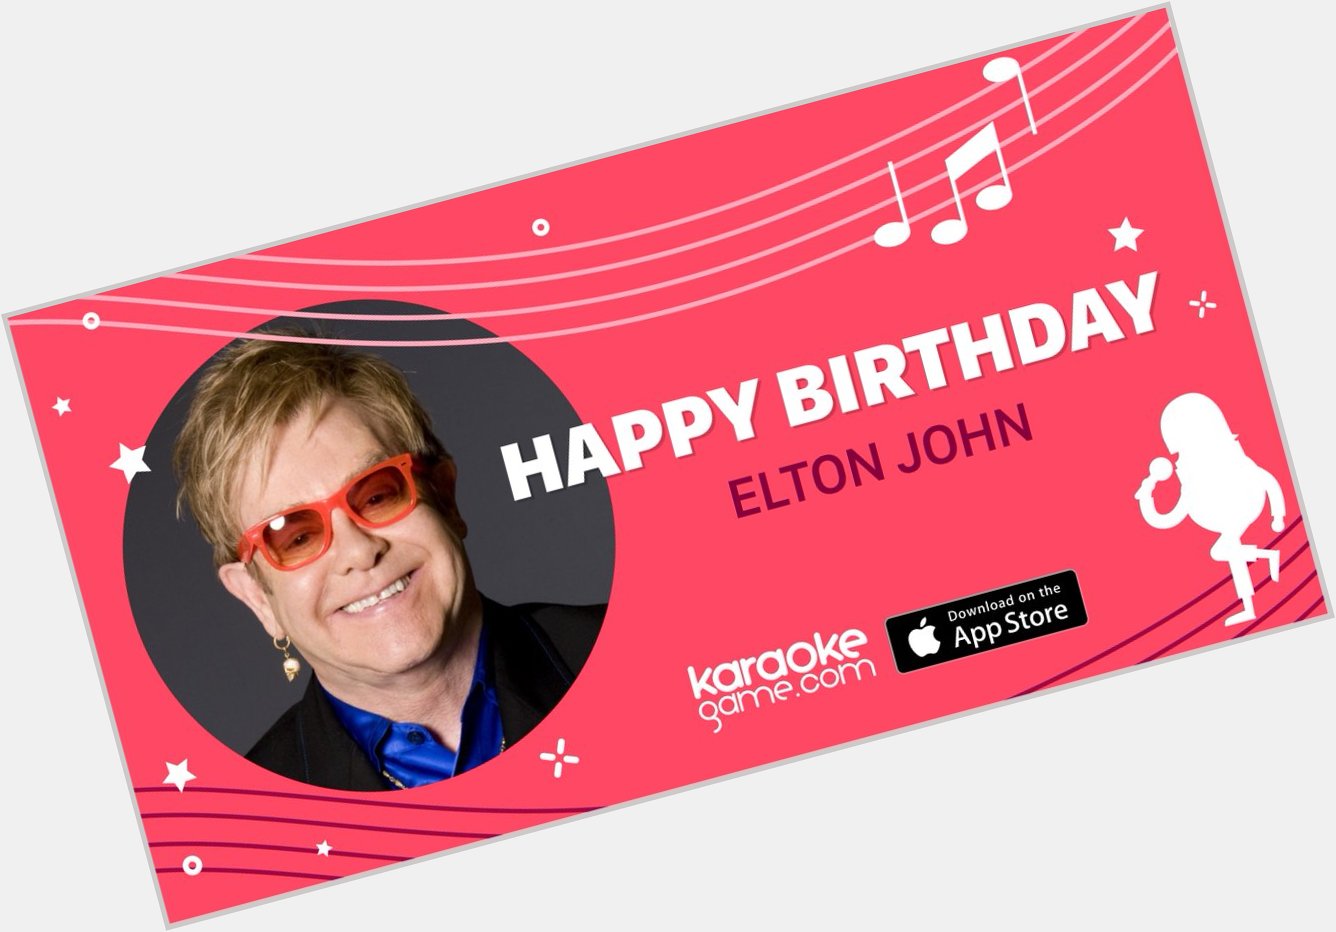 Happy Birthday to Elton John! Time to sing:  